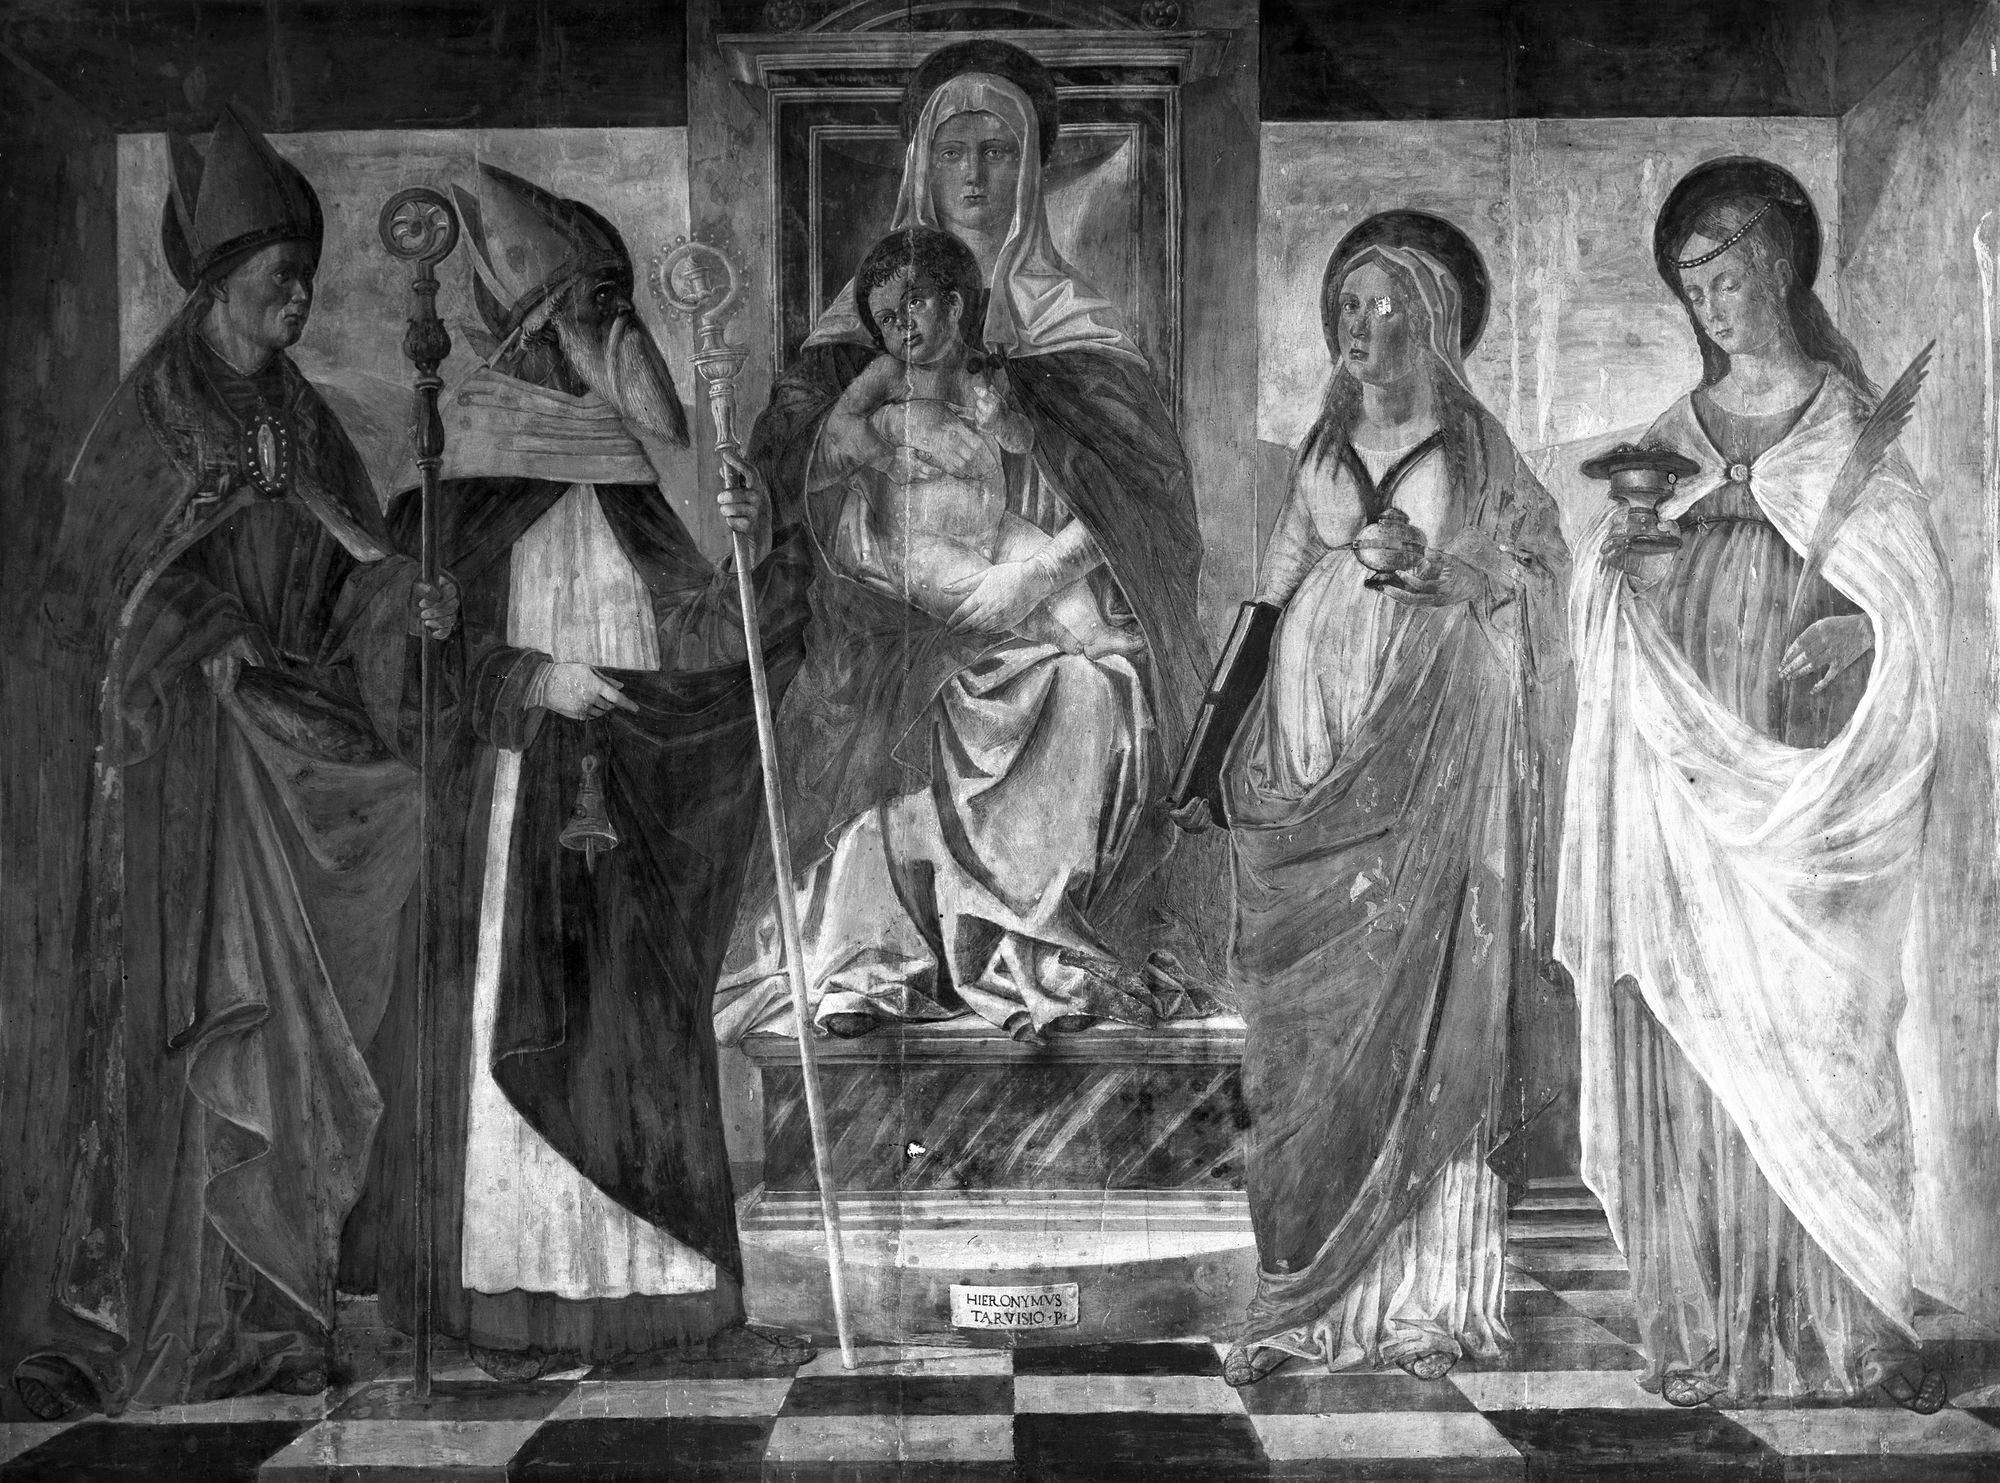 Duomo. Dipinto di Girolamo da Treviso, già nella casa del Vescovo a Montebelluna ora in Duomo (negativo) di Gabinetto fotografico (XX)